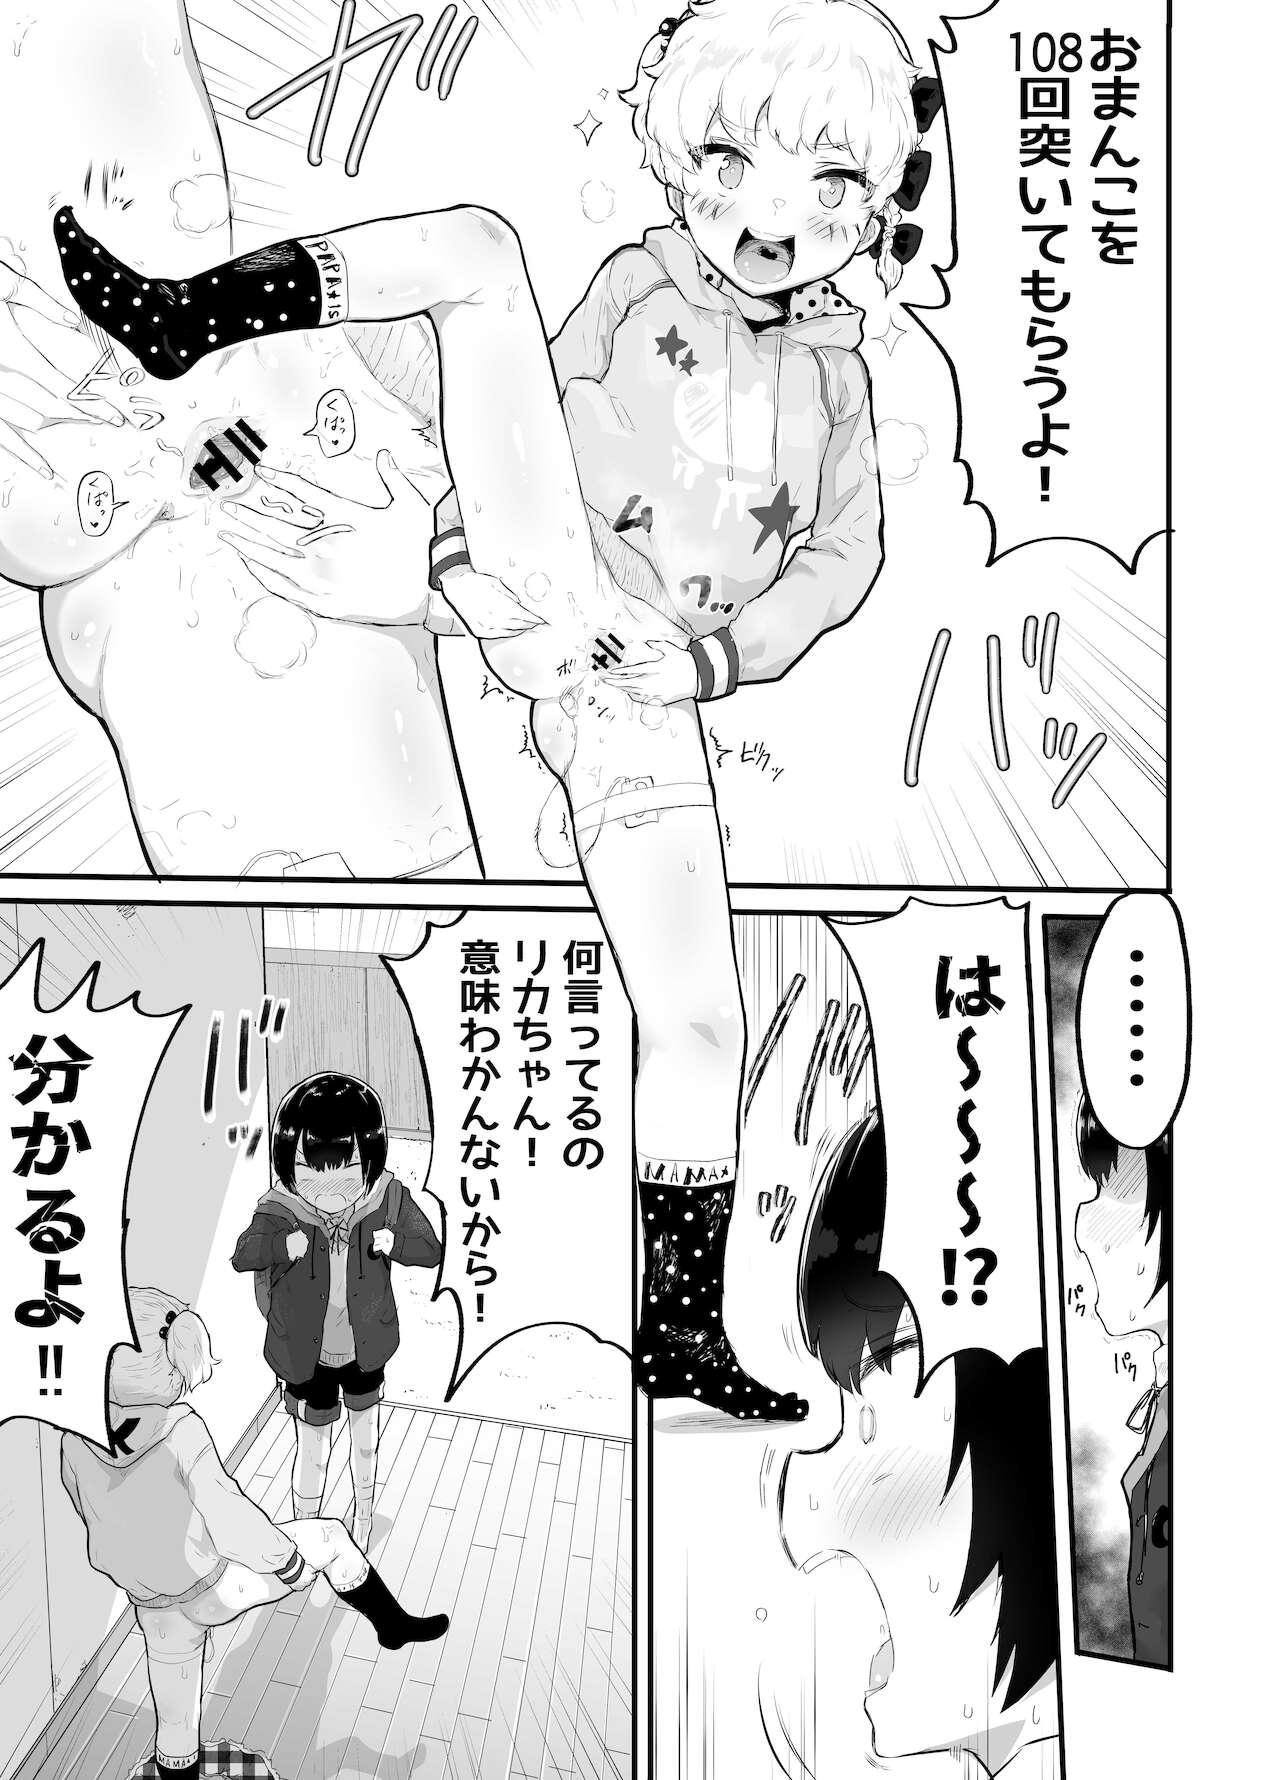 Cutie Oomisoka ni Omanko 108-kai Tsuku dake no Hon Straight - Page 5